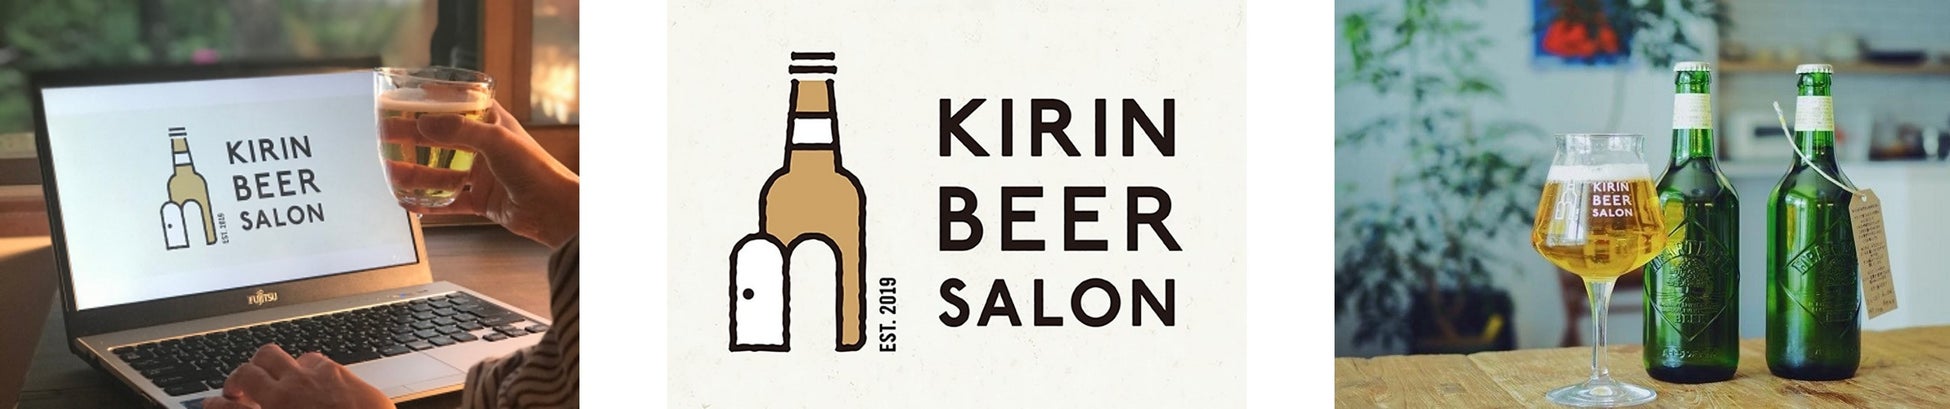 これからの時代のビールの楽しみ方を共に見つける、ビール好きがつながるコミュニティ「KIRIN BEER SALON(キリンビールサロン)」第四期全国から参加できるオンラインで開催※1！